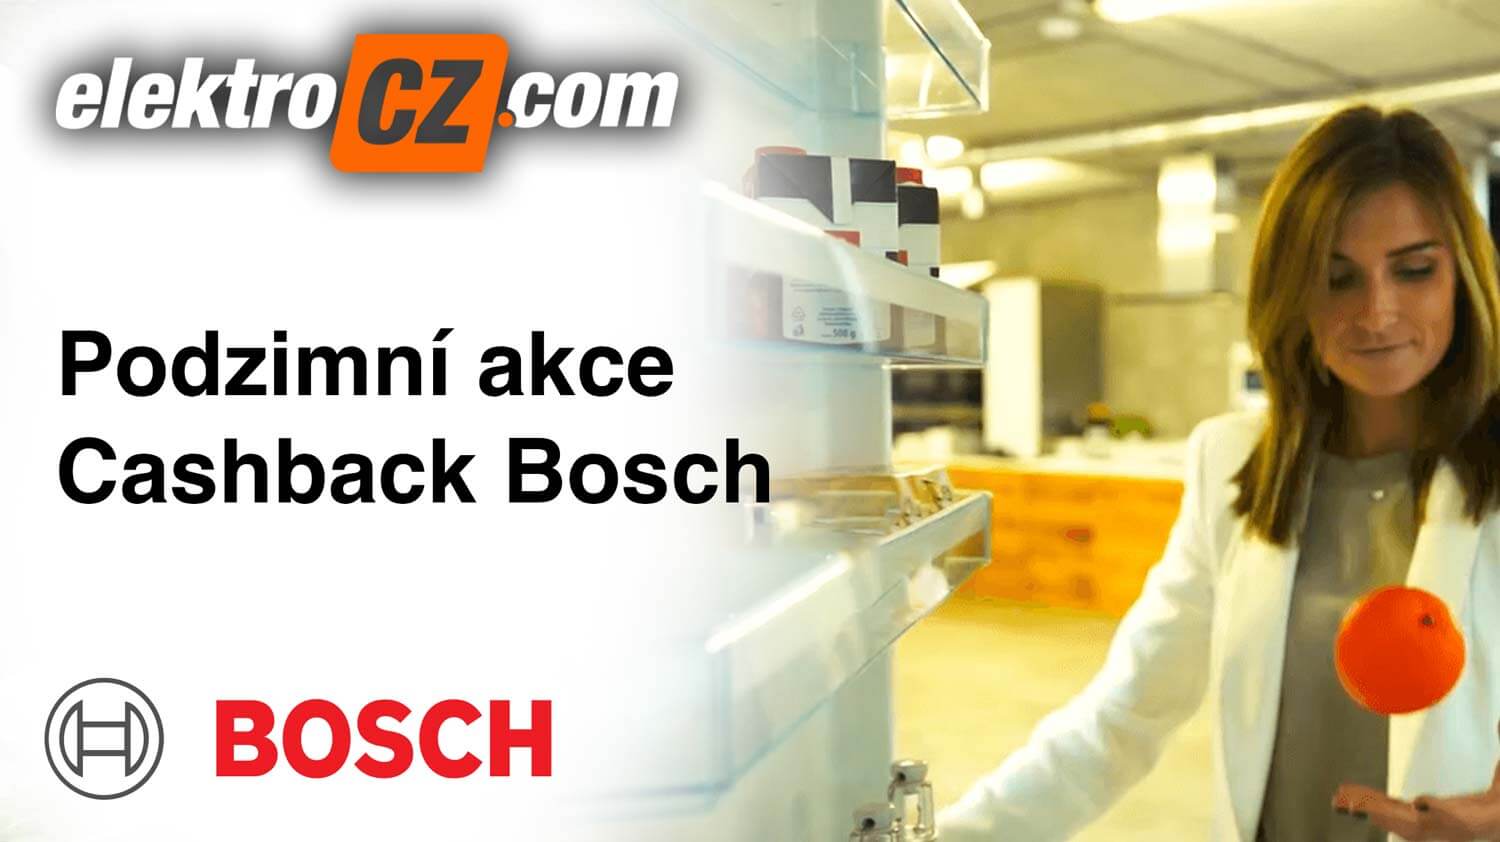 Podzimní akce Cashback Bosch - znáte z TV